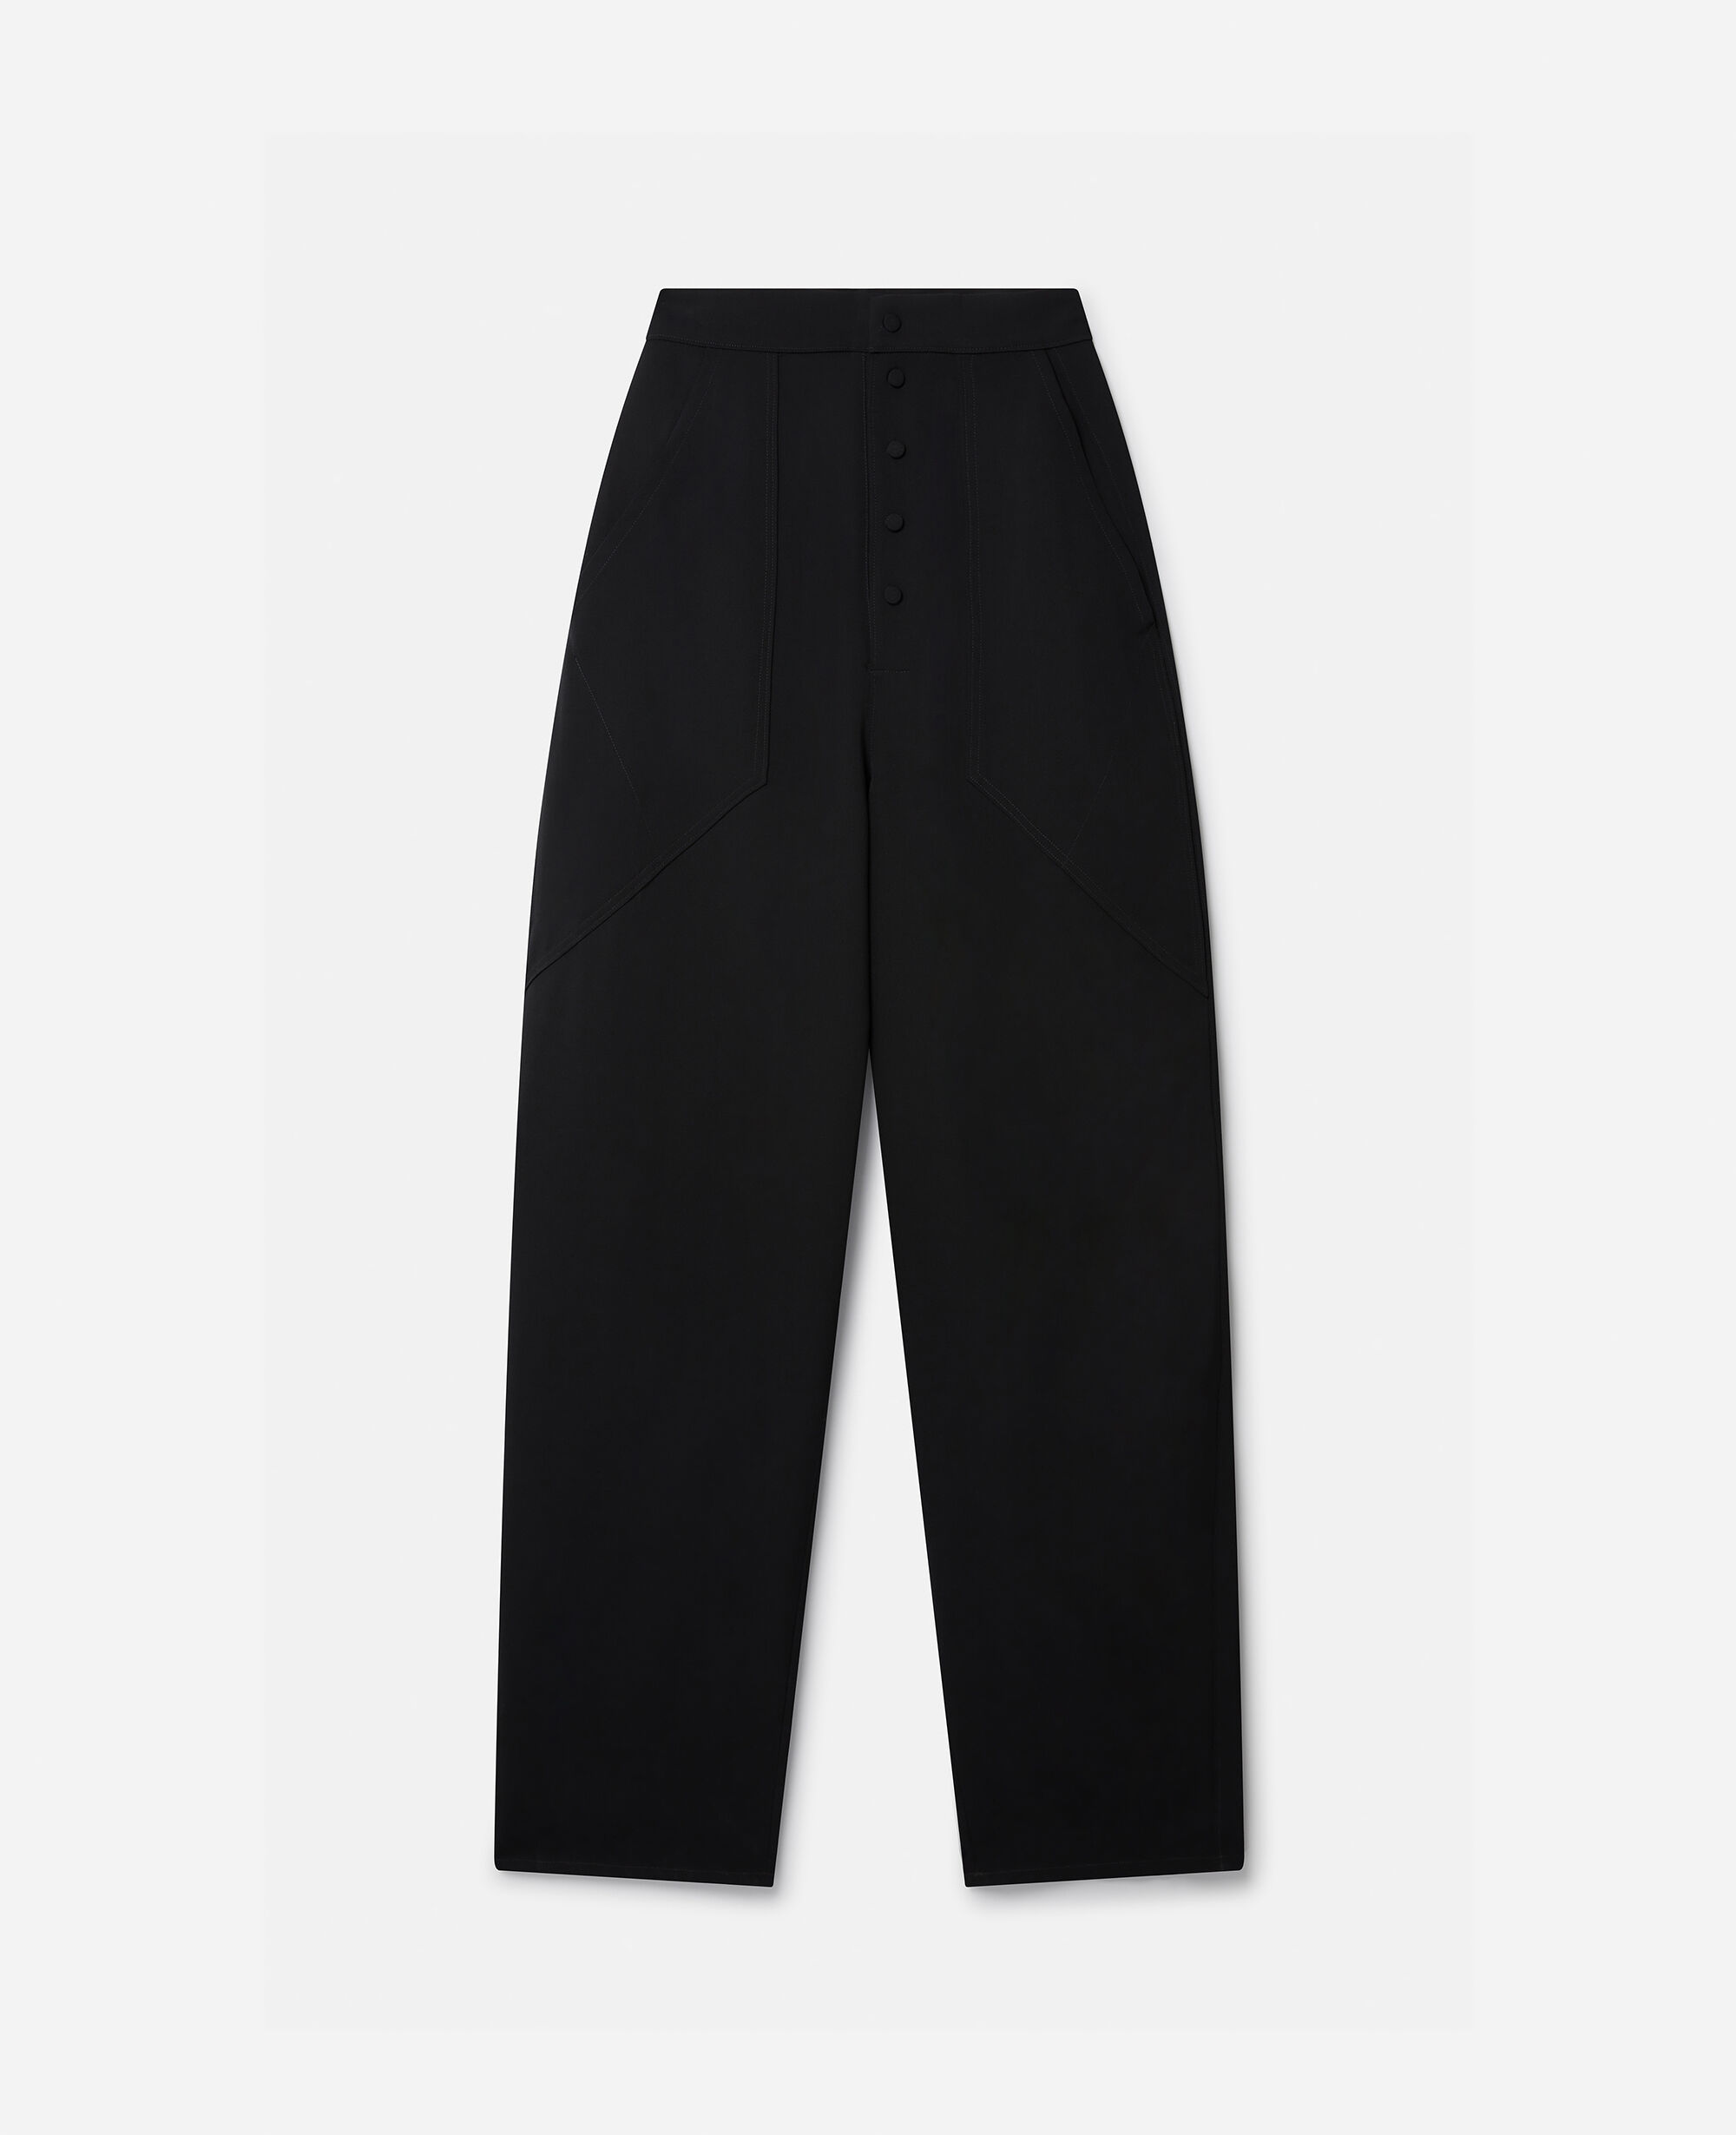 Partow Italian Stretch Skinny Trousers - Black | Garmentory